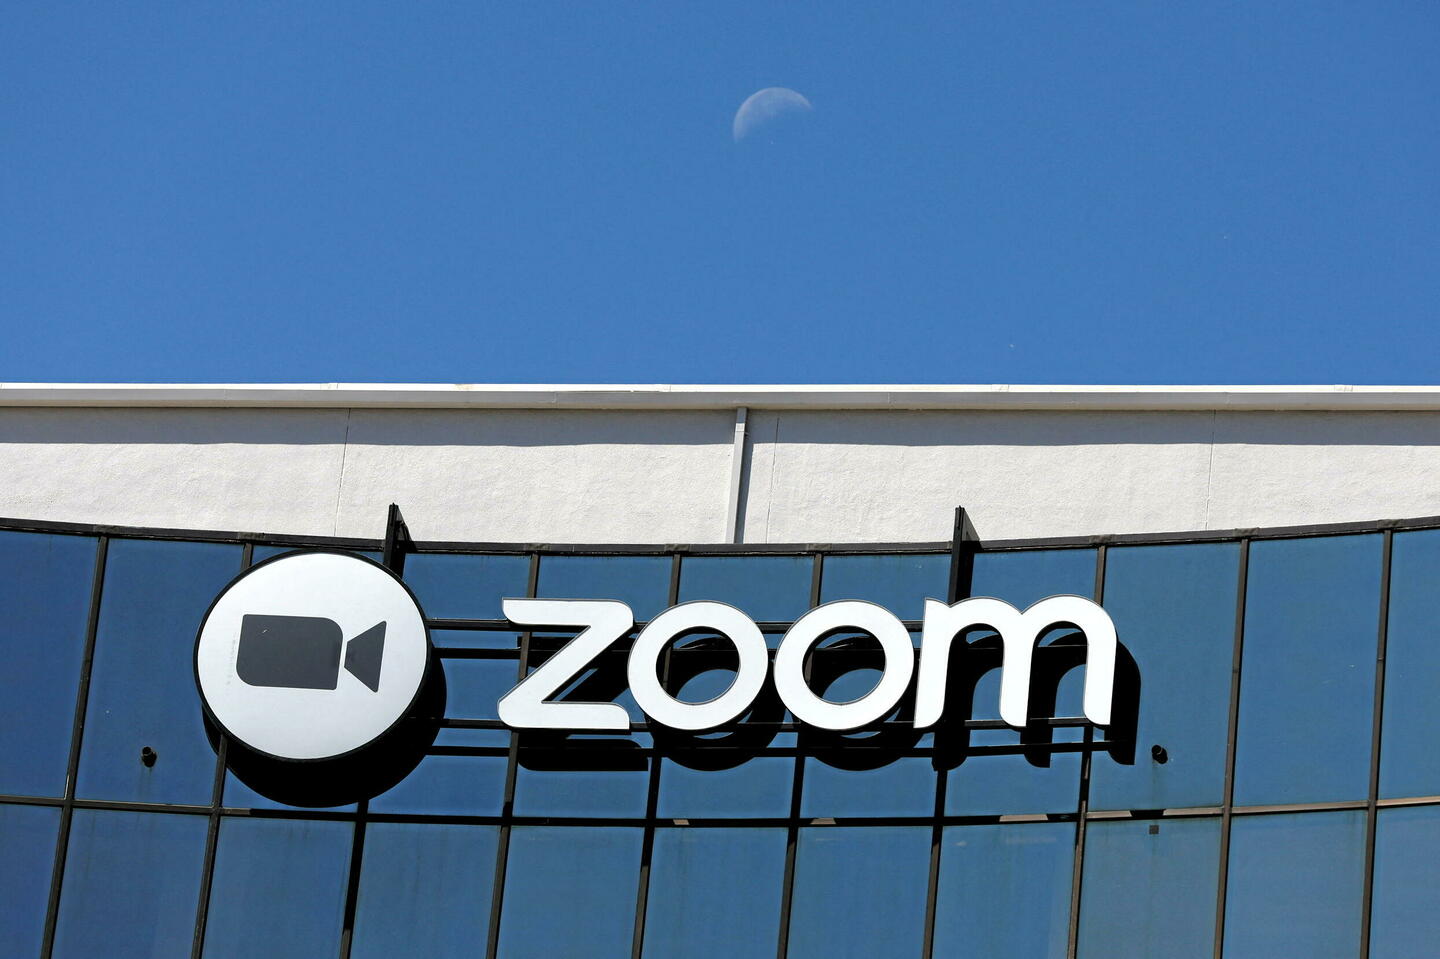 Zoom, leader de la visioconférence, exhorte ses salariés… à revenir au bureau